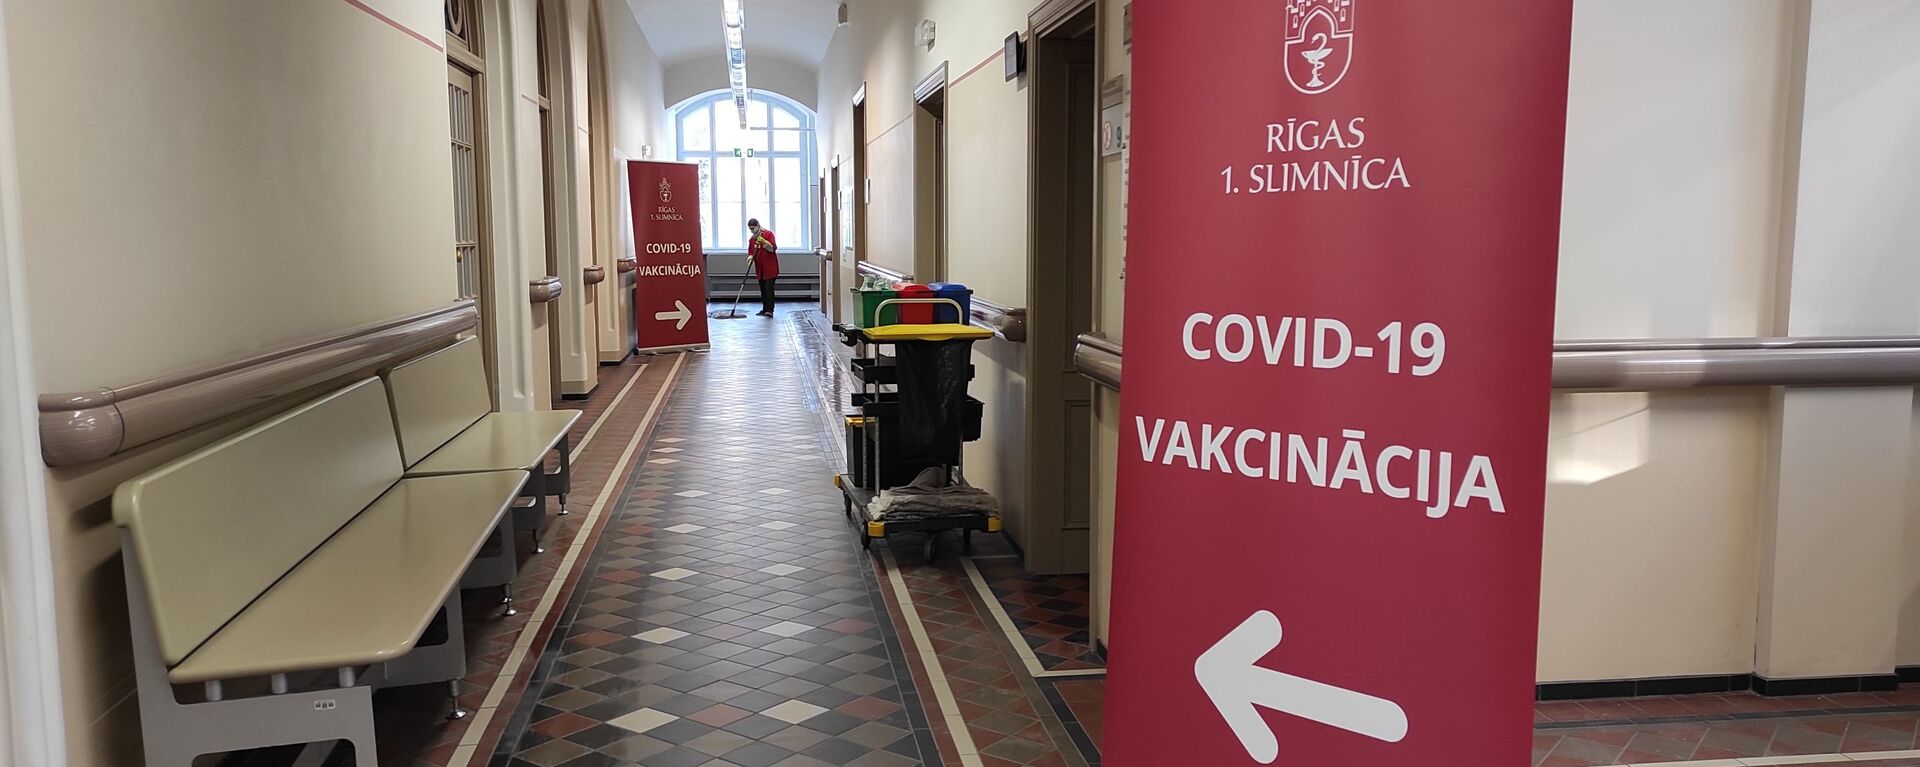 Вакцинация в Первой городской больнице Риги - Sputnik Латвия, 1920, 02.02.2021